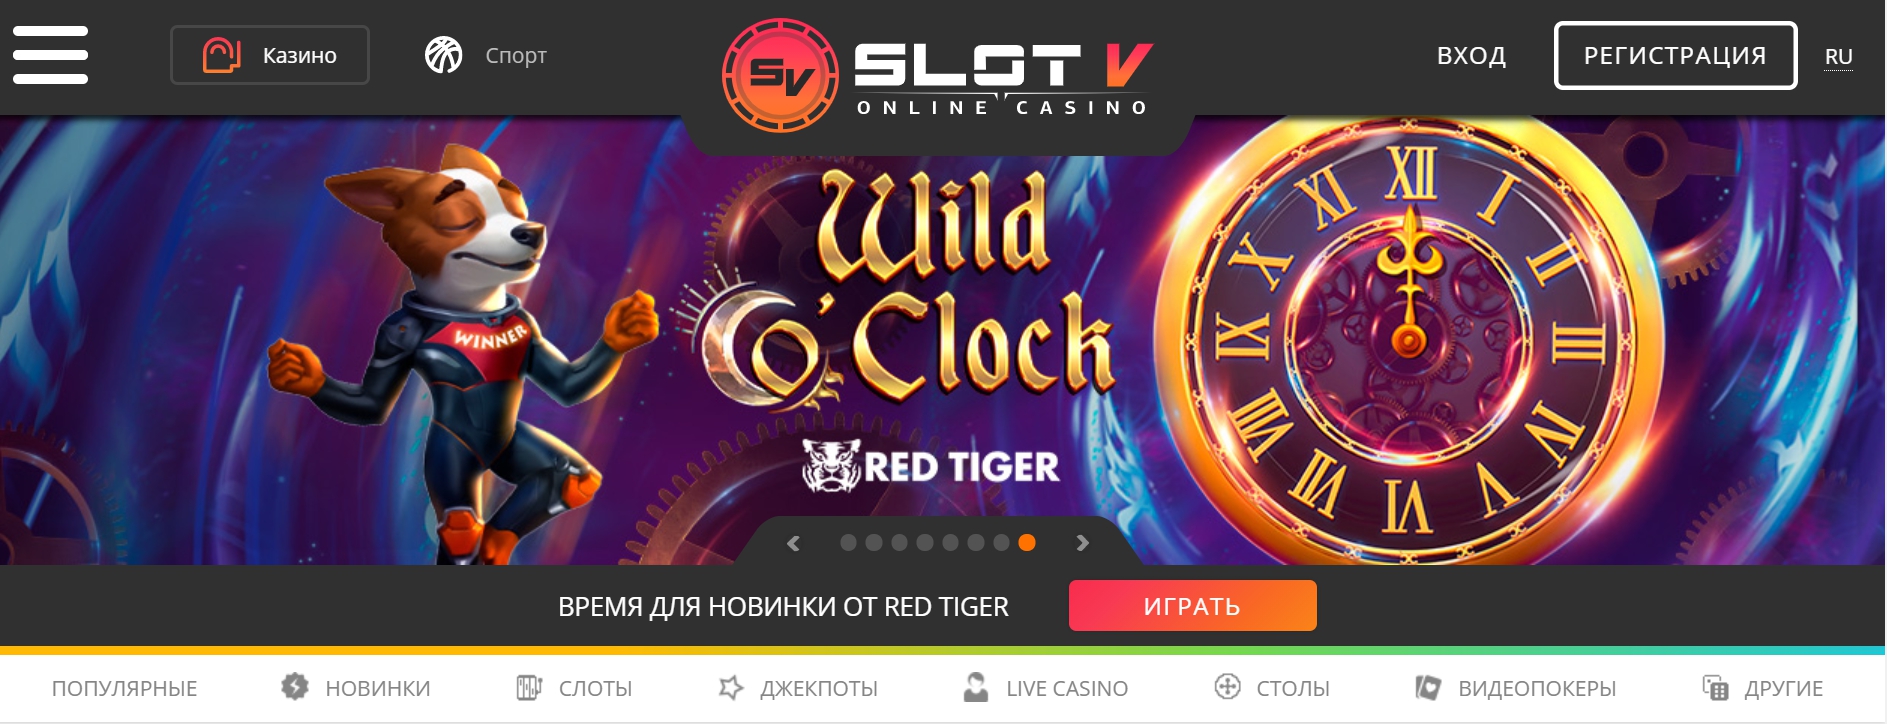 Slot v casino вход slot v online xyz джойказино официальный скачать играть и выигрывать рф